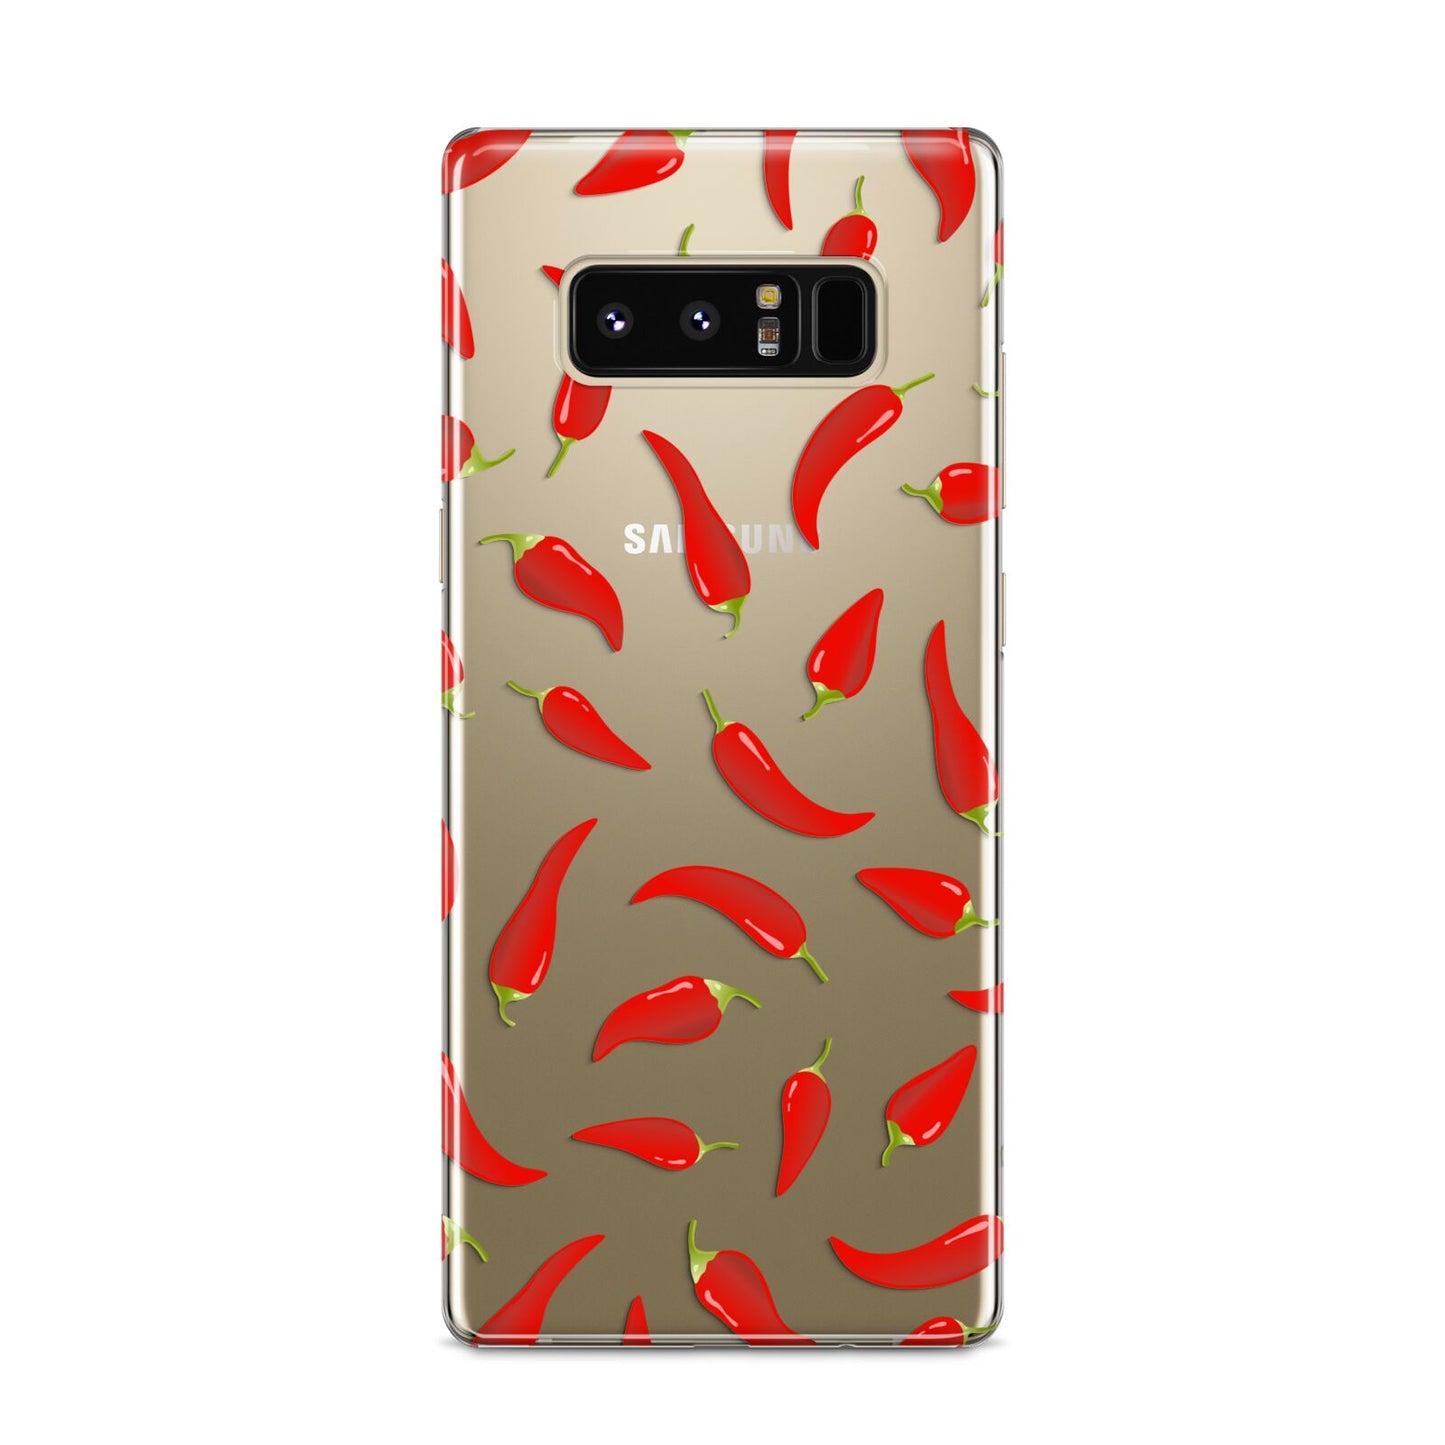 Chilli Pepper Samsung Galaxy S8 Case